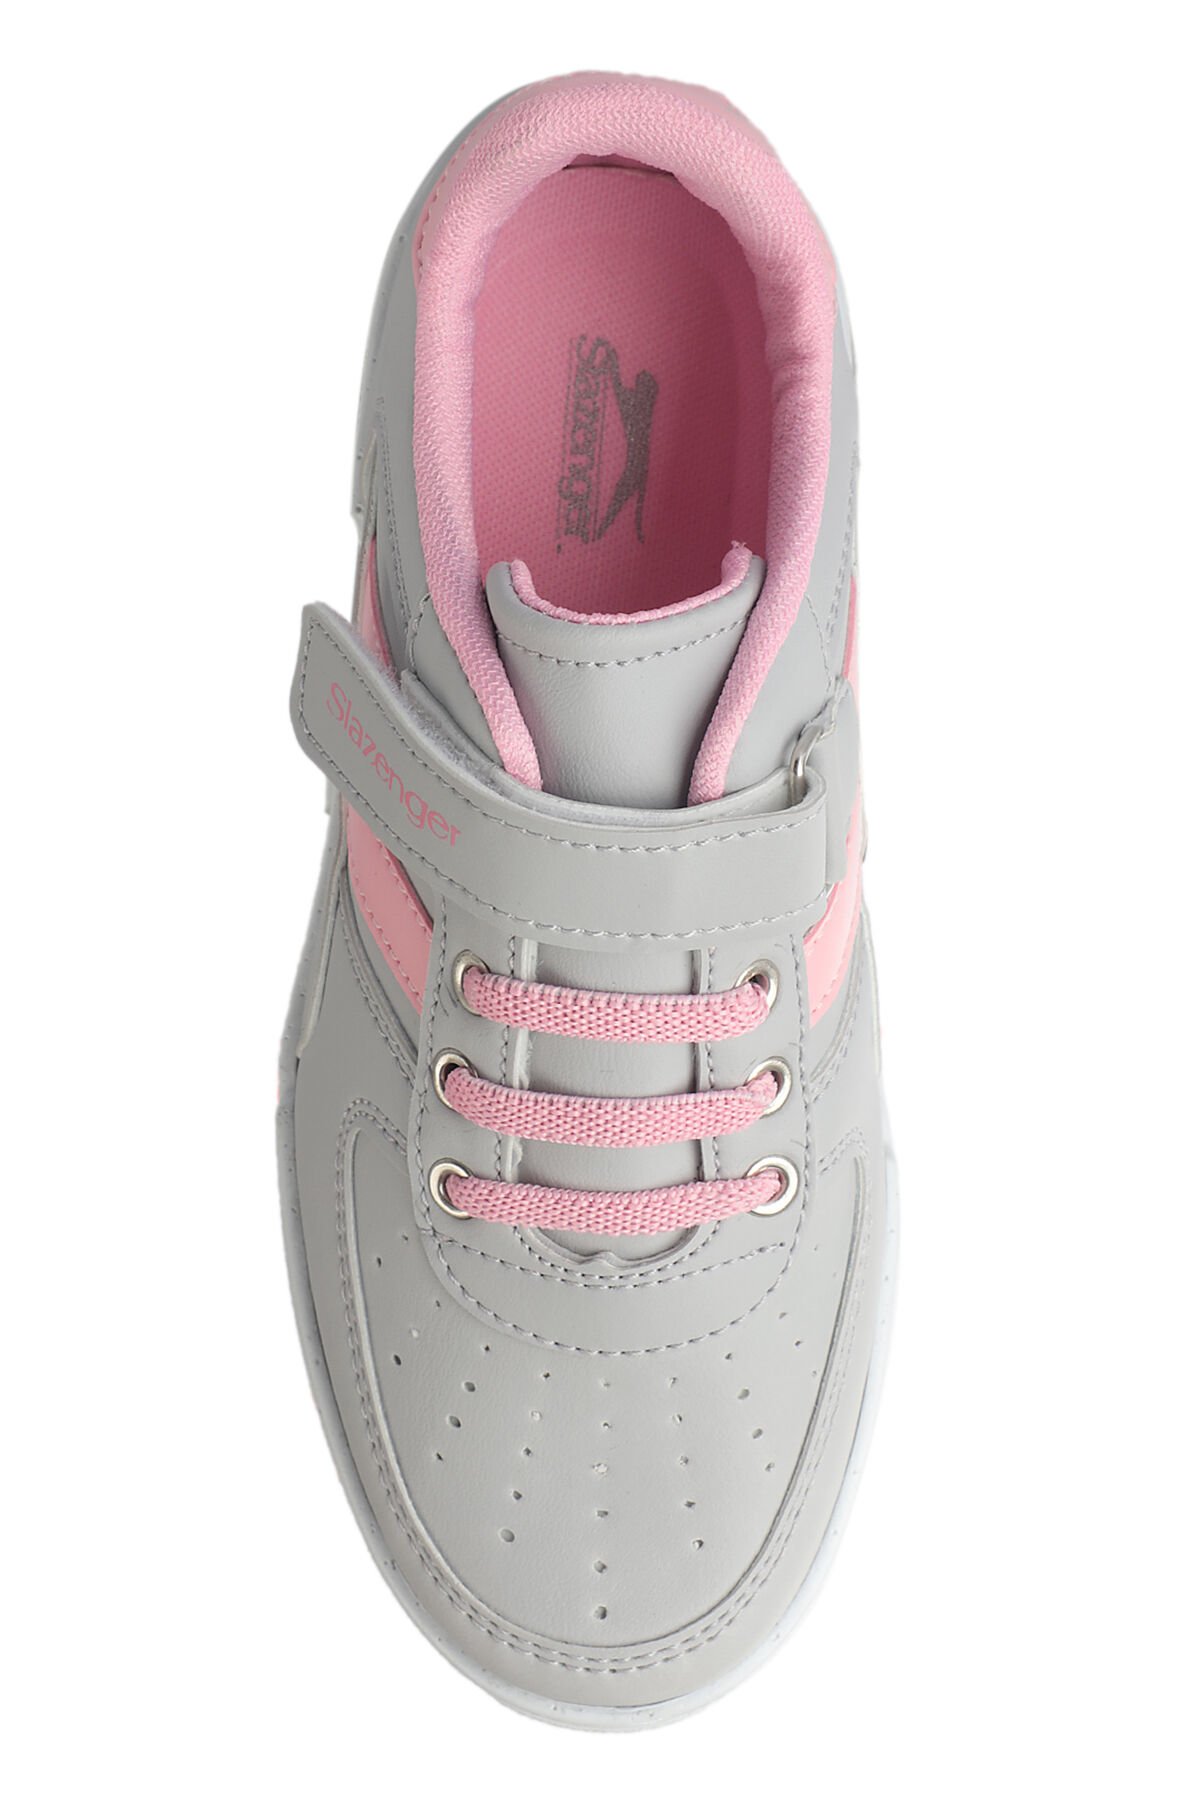 Slazenger CAMP Sneaker Kız Çocuk Ayakkabı Gri / Pembe - Thumbnail